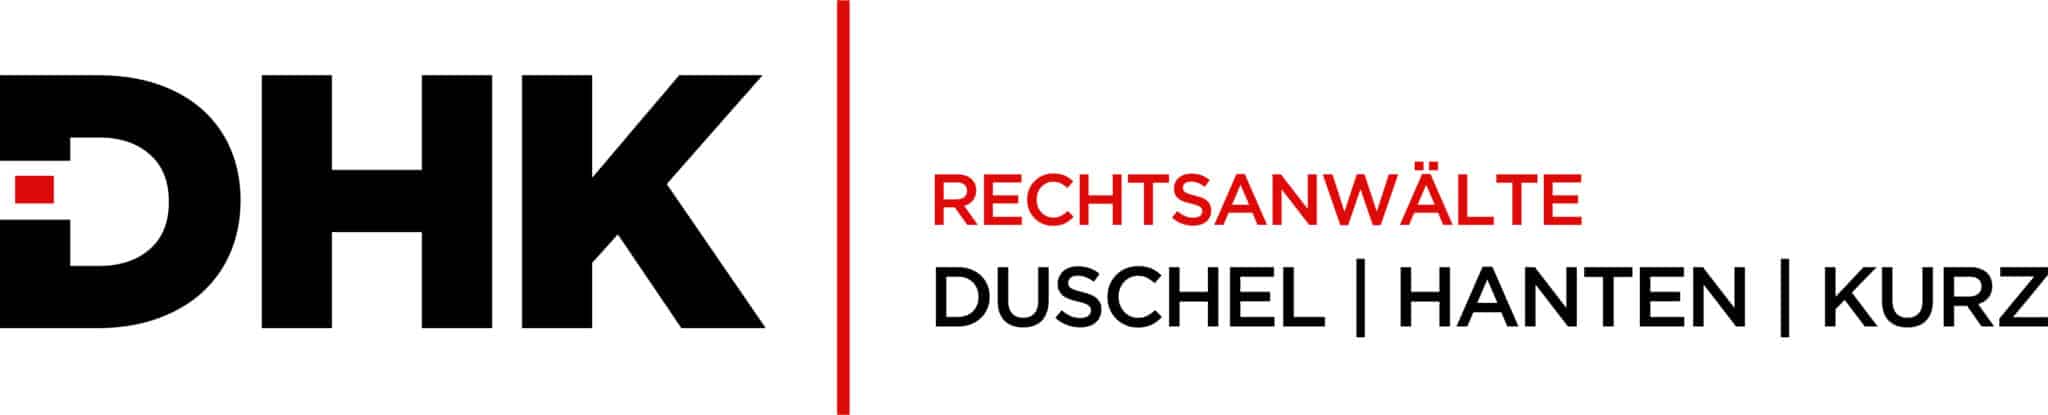 Logo Duschel Hanten Kurz